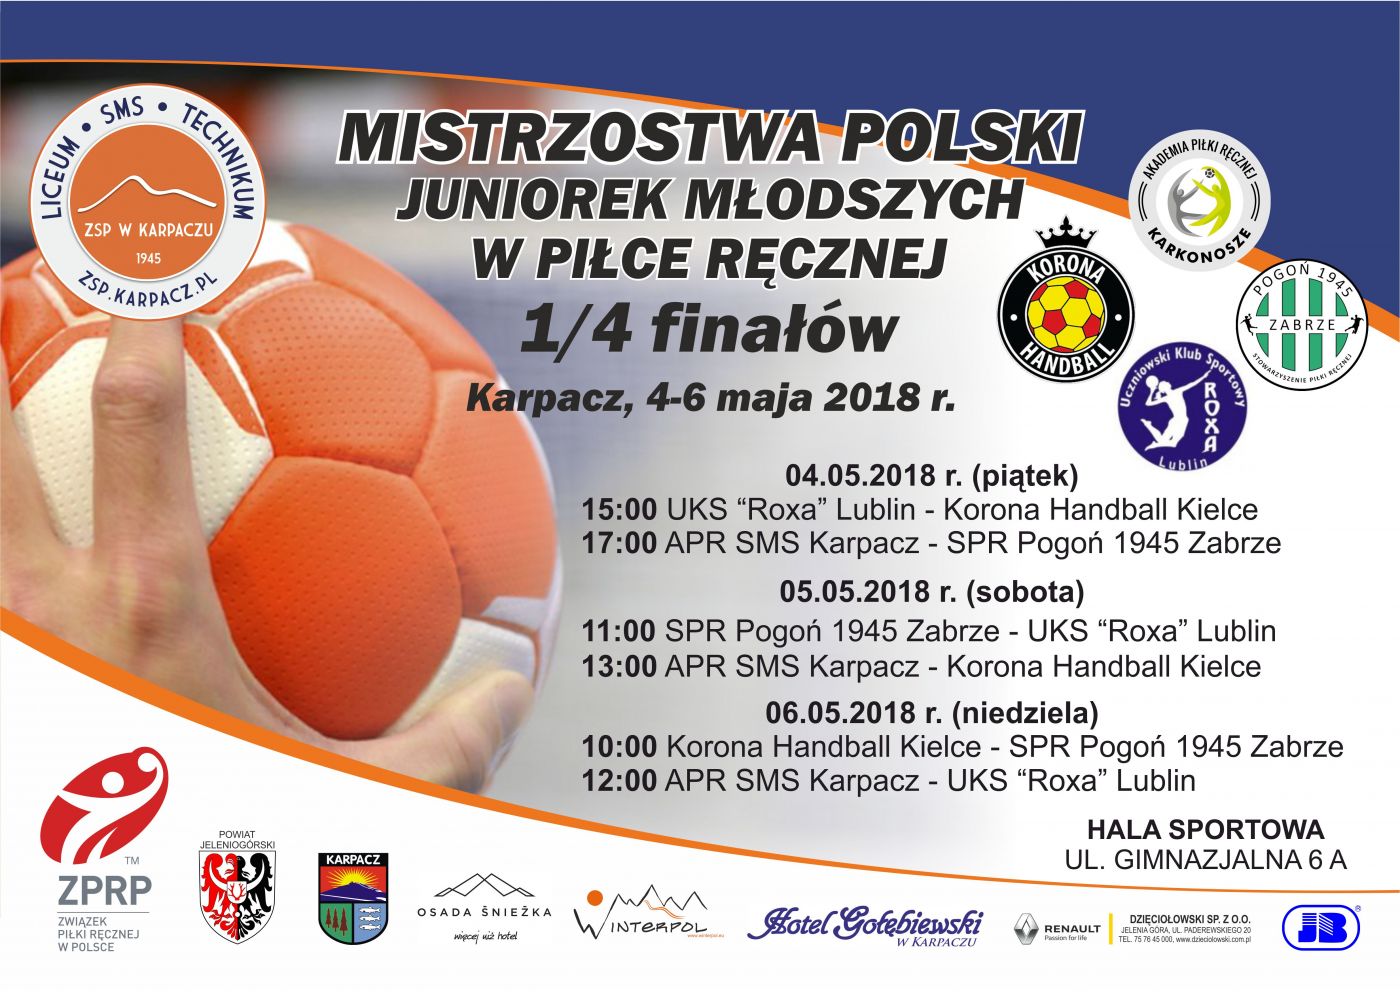 Mistrzostwa Polski Juniorek Młodszych w Piłce Ręcznej 1/4 finałów